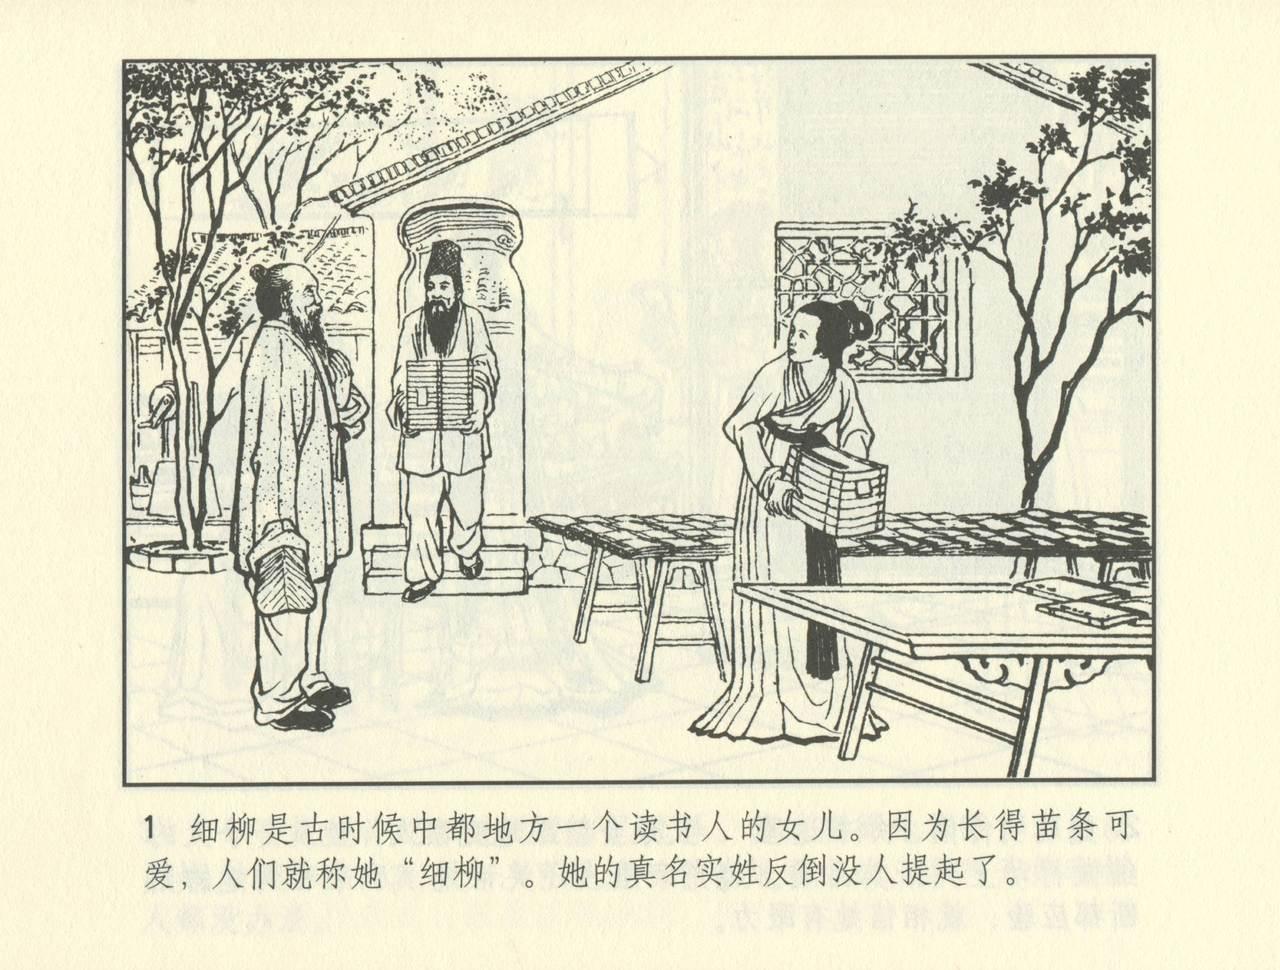 聊斋志异 张玮等绘 天津人民美术出版社 卷二十一 ~ 三十 473